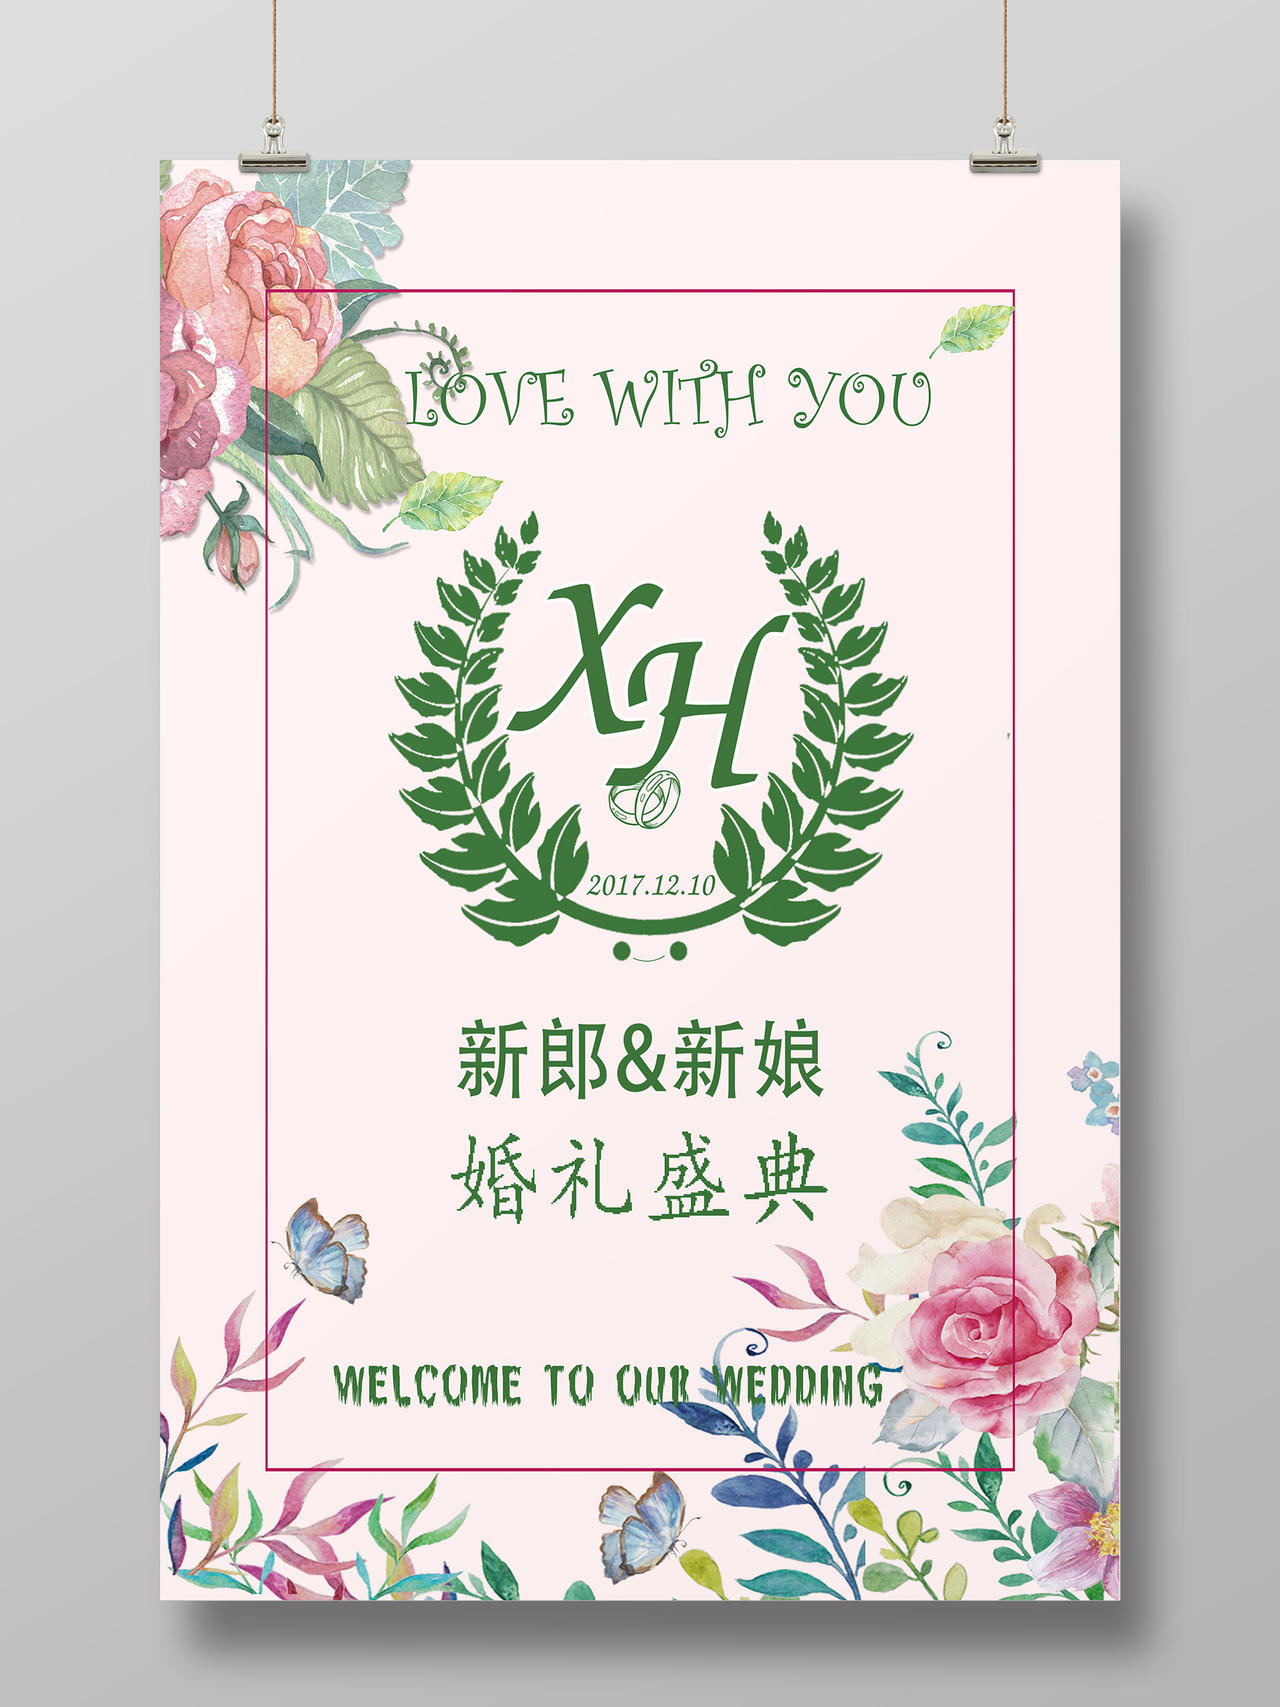 粉色背景清新复古花朵结婚婚礼婚庆宣传单海报